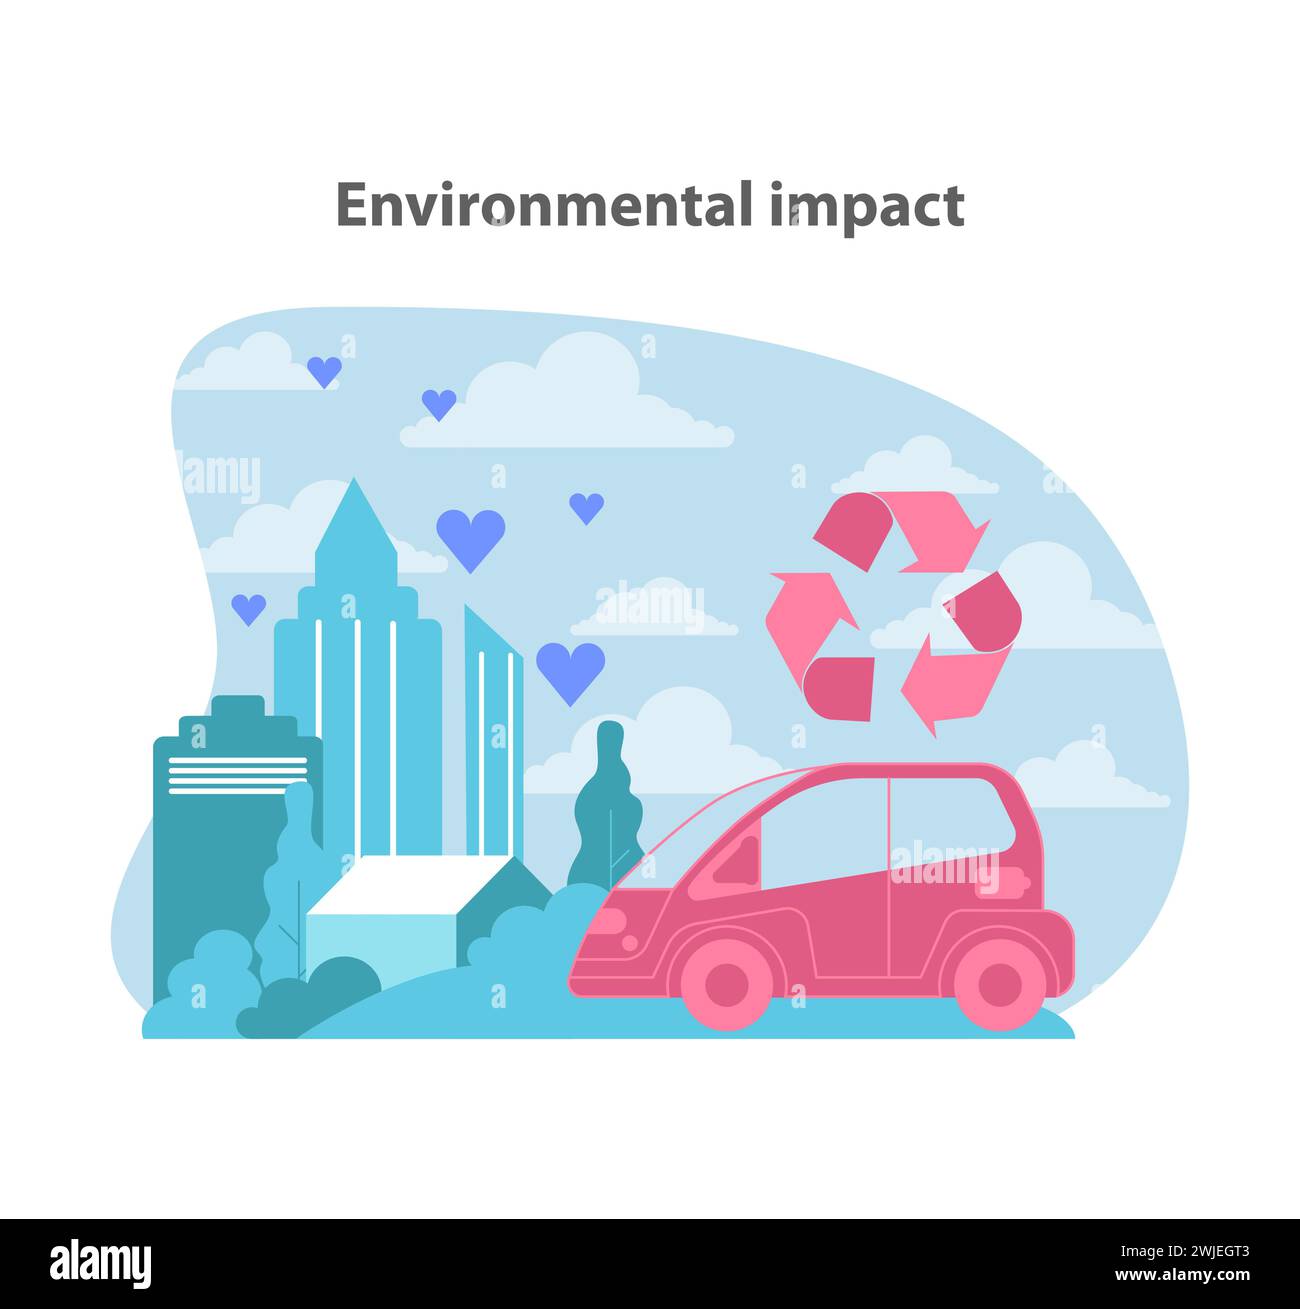 L'impronta ecologica delle auto elettriche. Illustrare l'impatto ambientale positivo attraverso il riciclaggio urbano e la riduzione delle emissioni. Illustrazione vettoriale piatta. Illustrazione Vettoriale